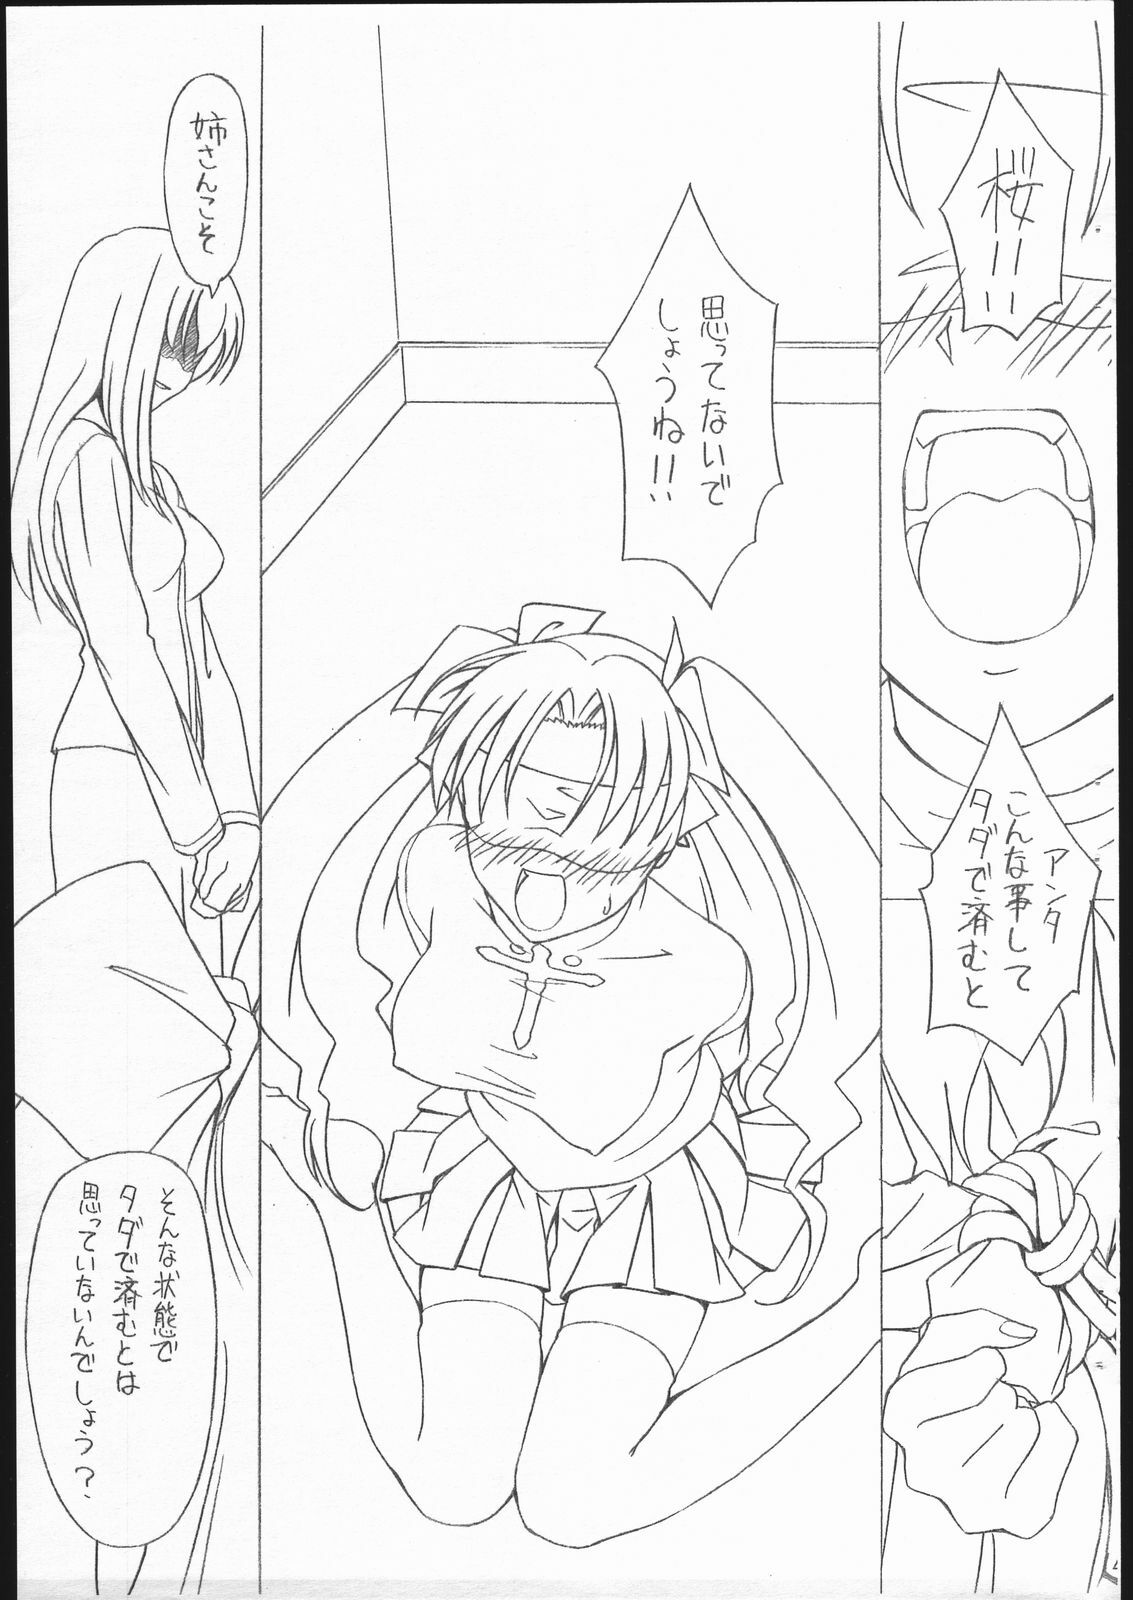 [Sprite] Fate/Sutei Inu Ai Do (Fate/Stay Night) page 3 full